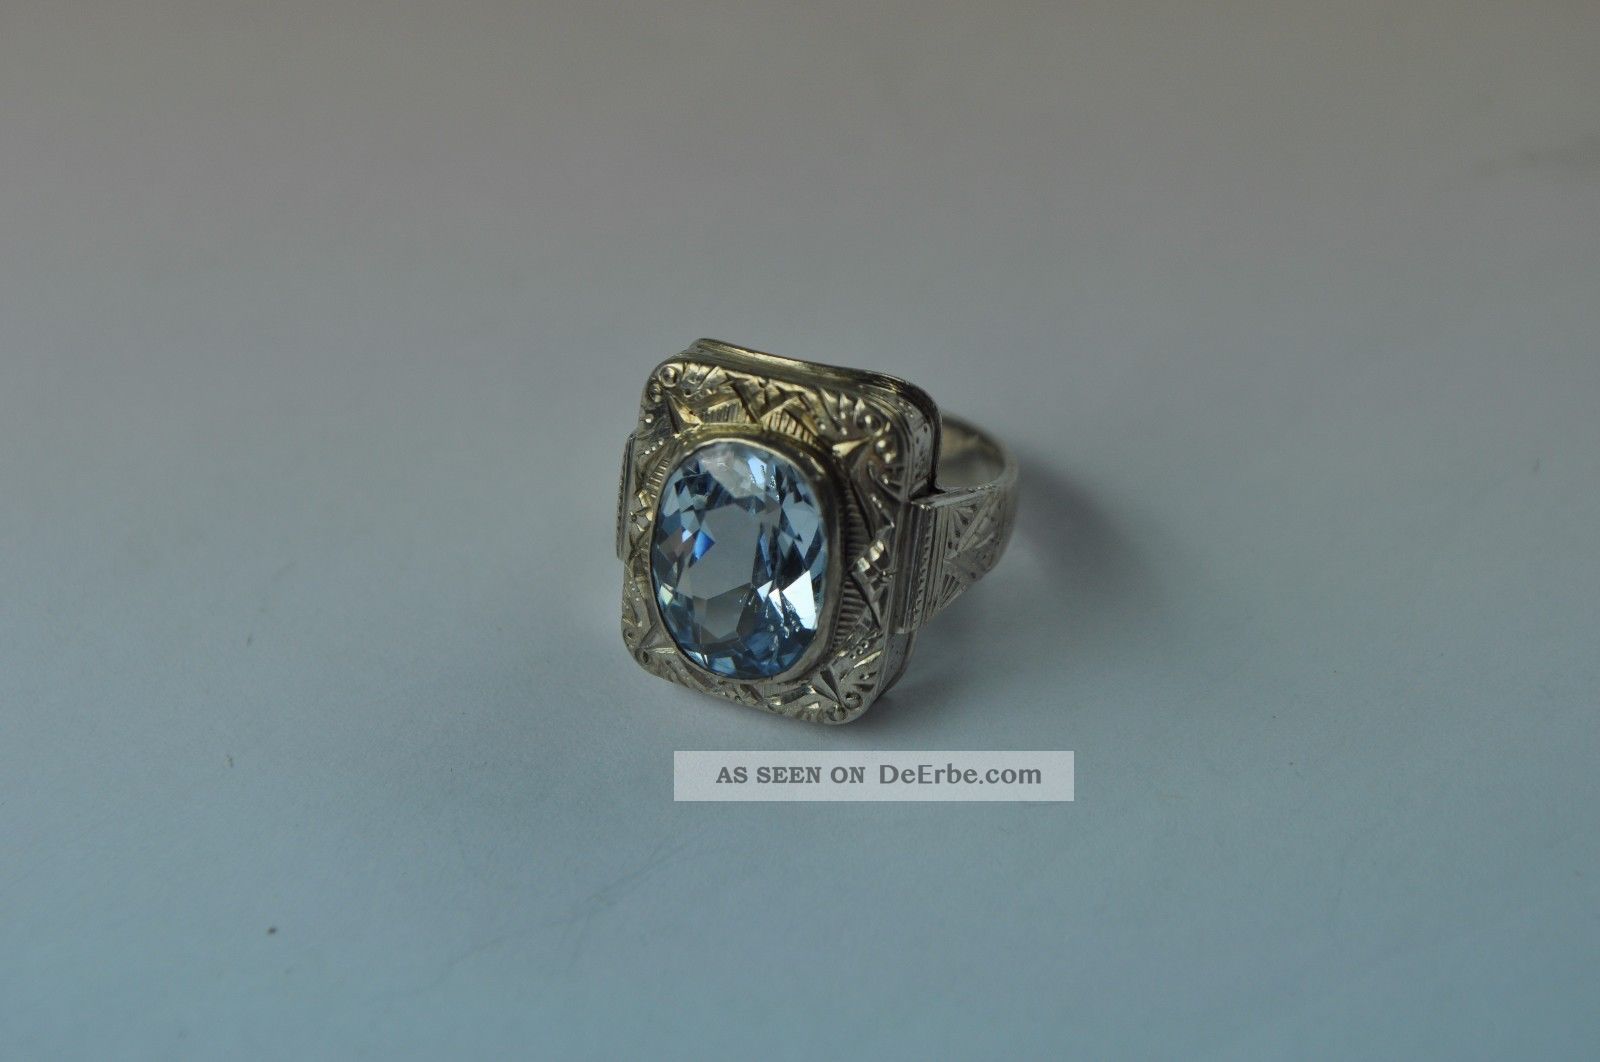 Großer Damenring Silber Mit Aquamarin Farbenem Stein.  Art Deco Um 1920 Museal Ringe Bild